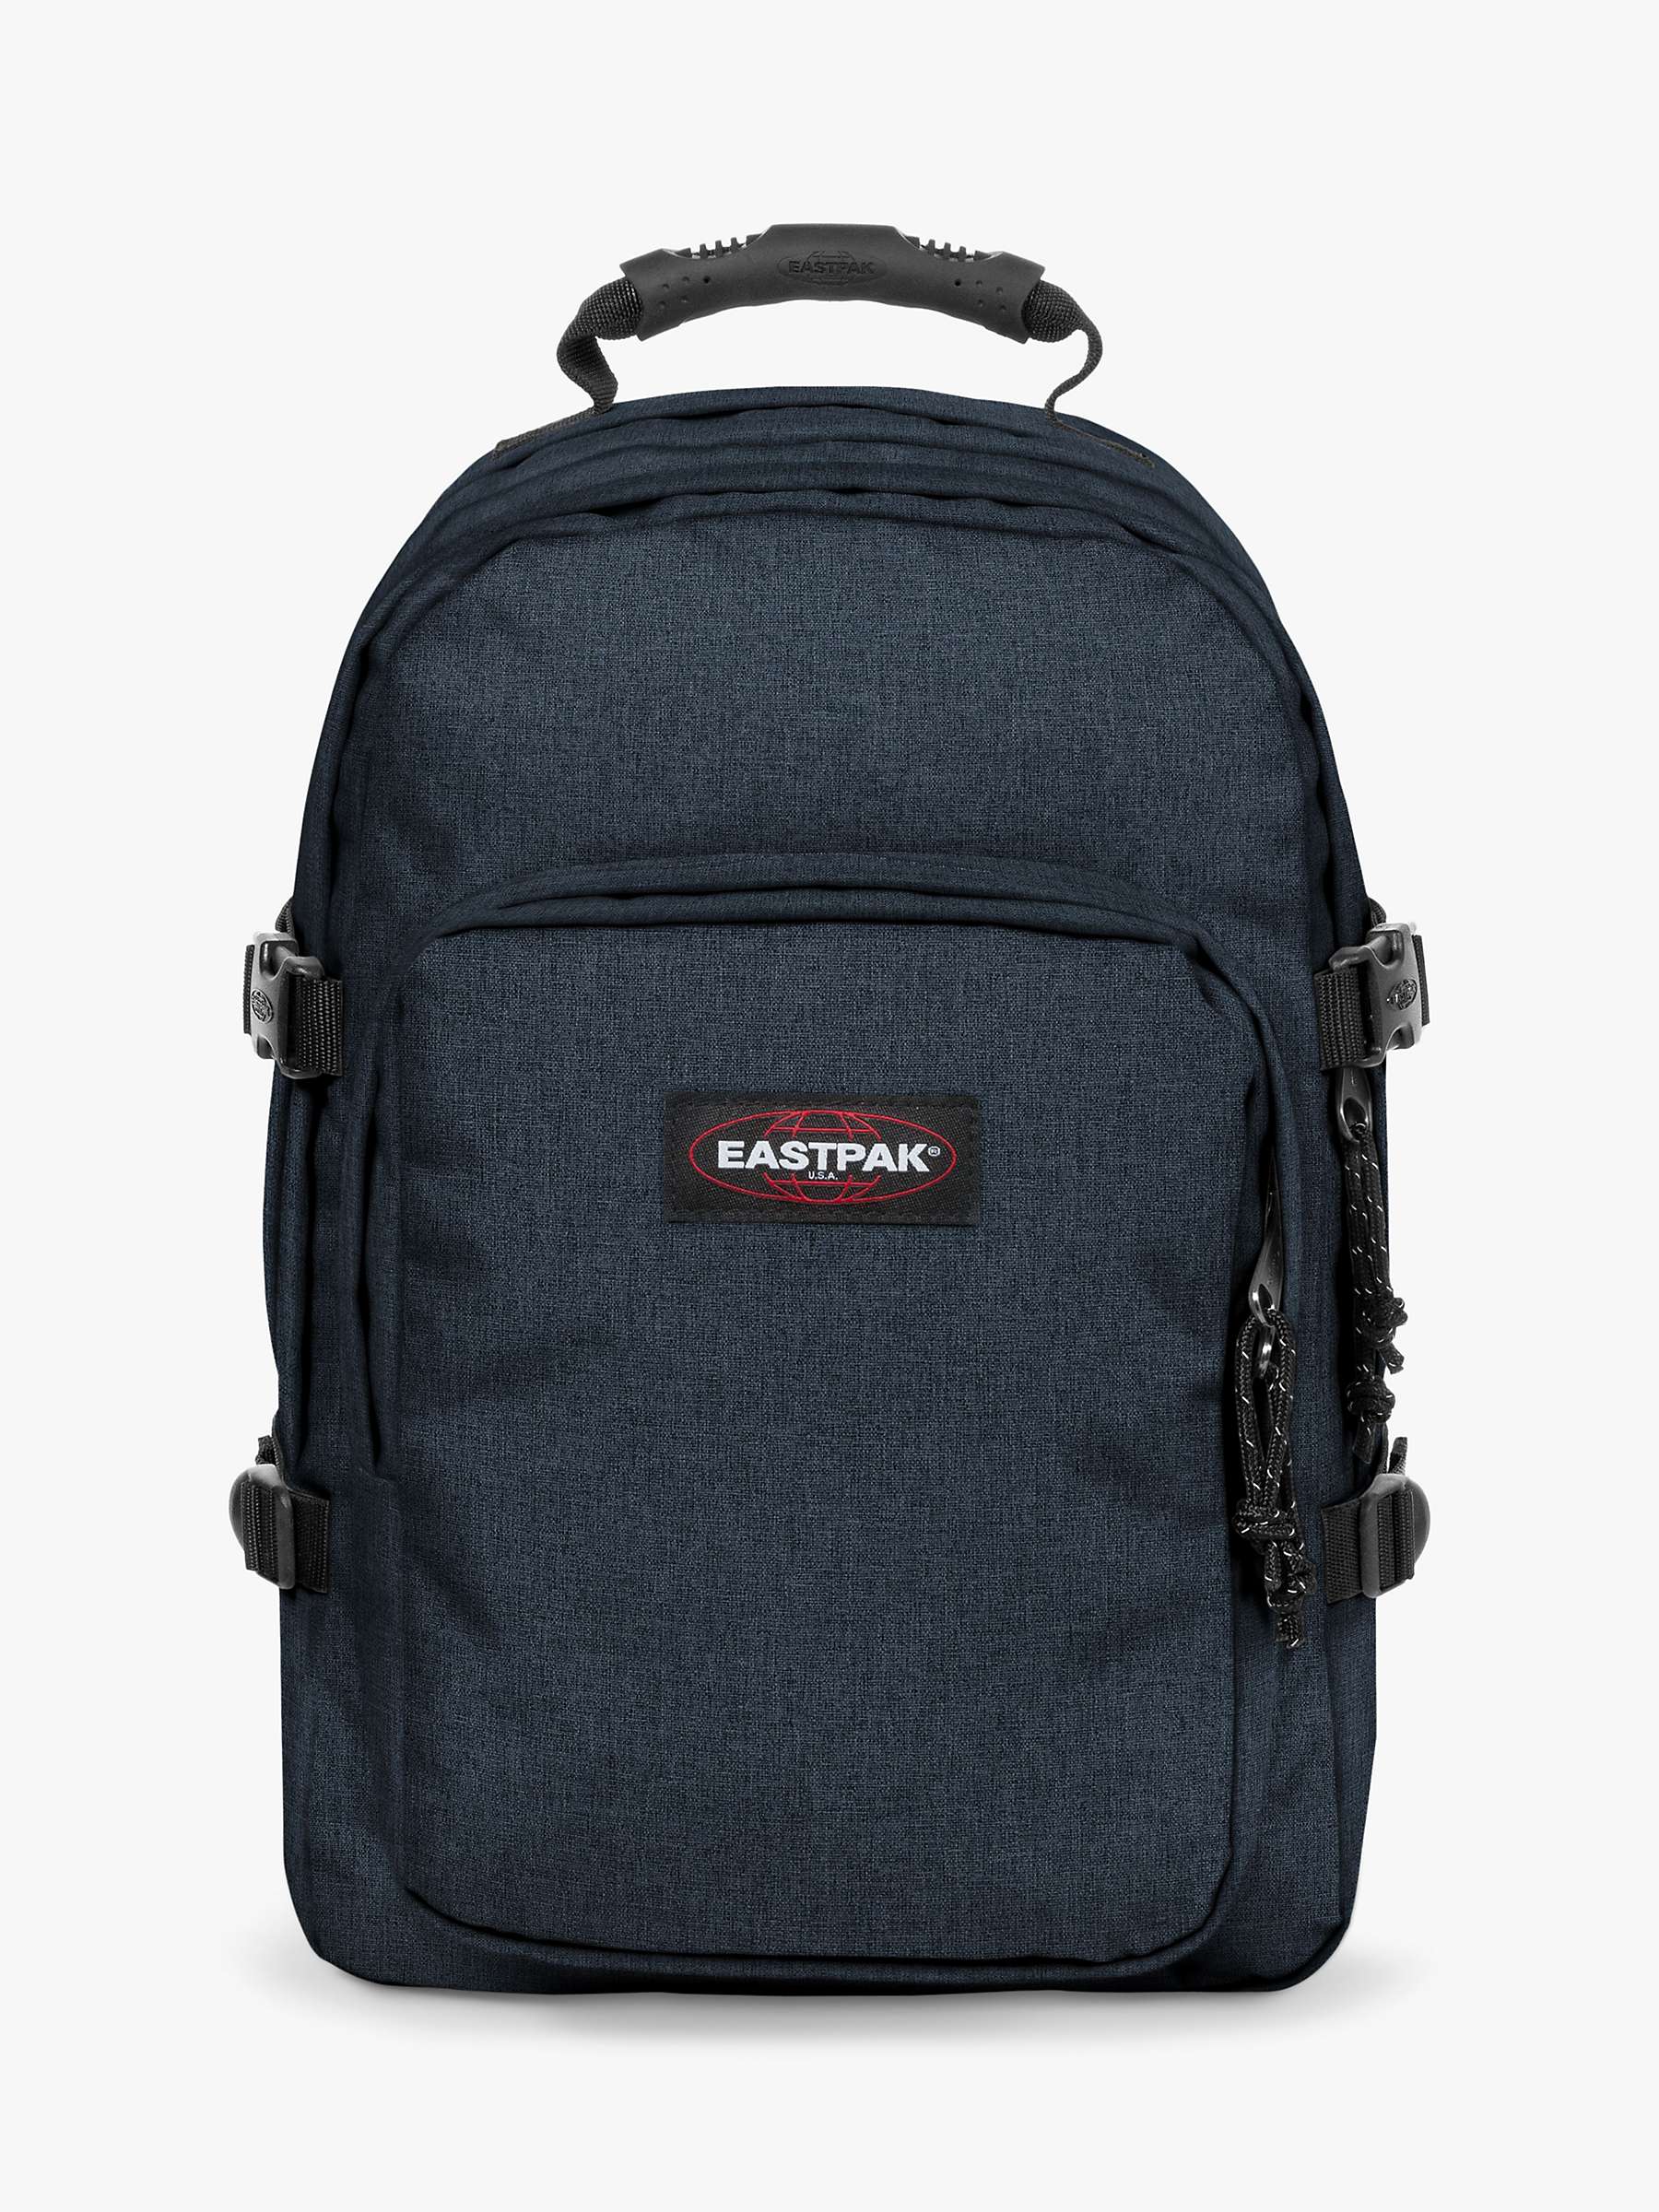 Buy Eastpak Provider Laptop Backpack Online at johnlewis.com